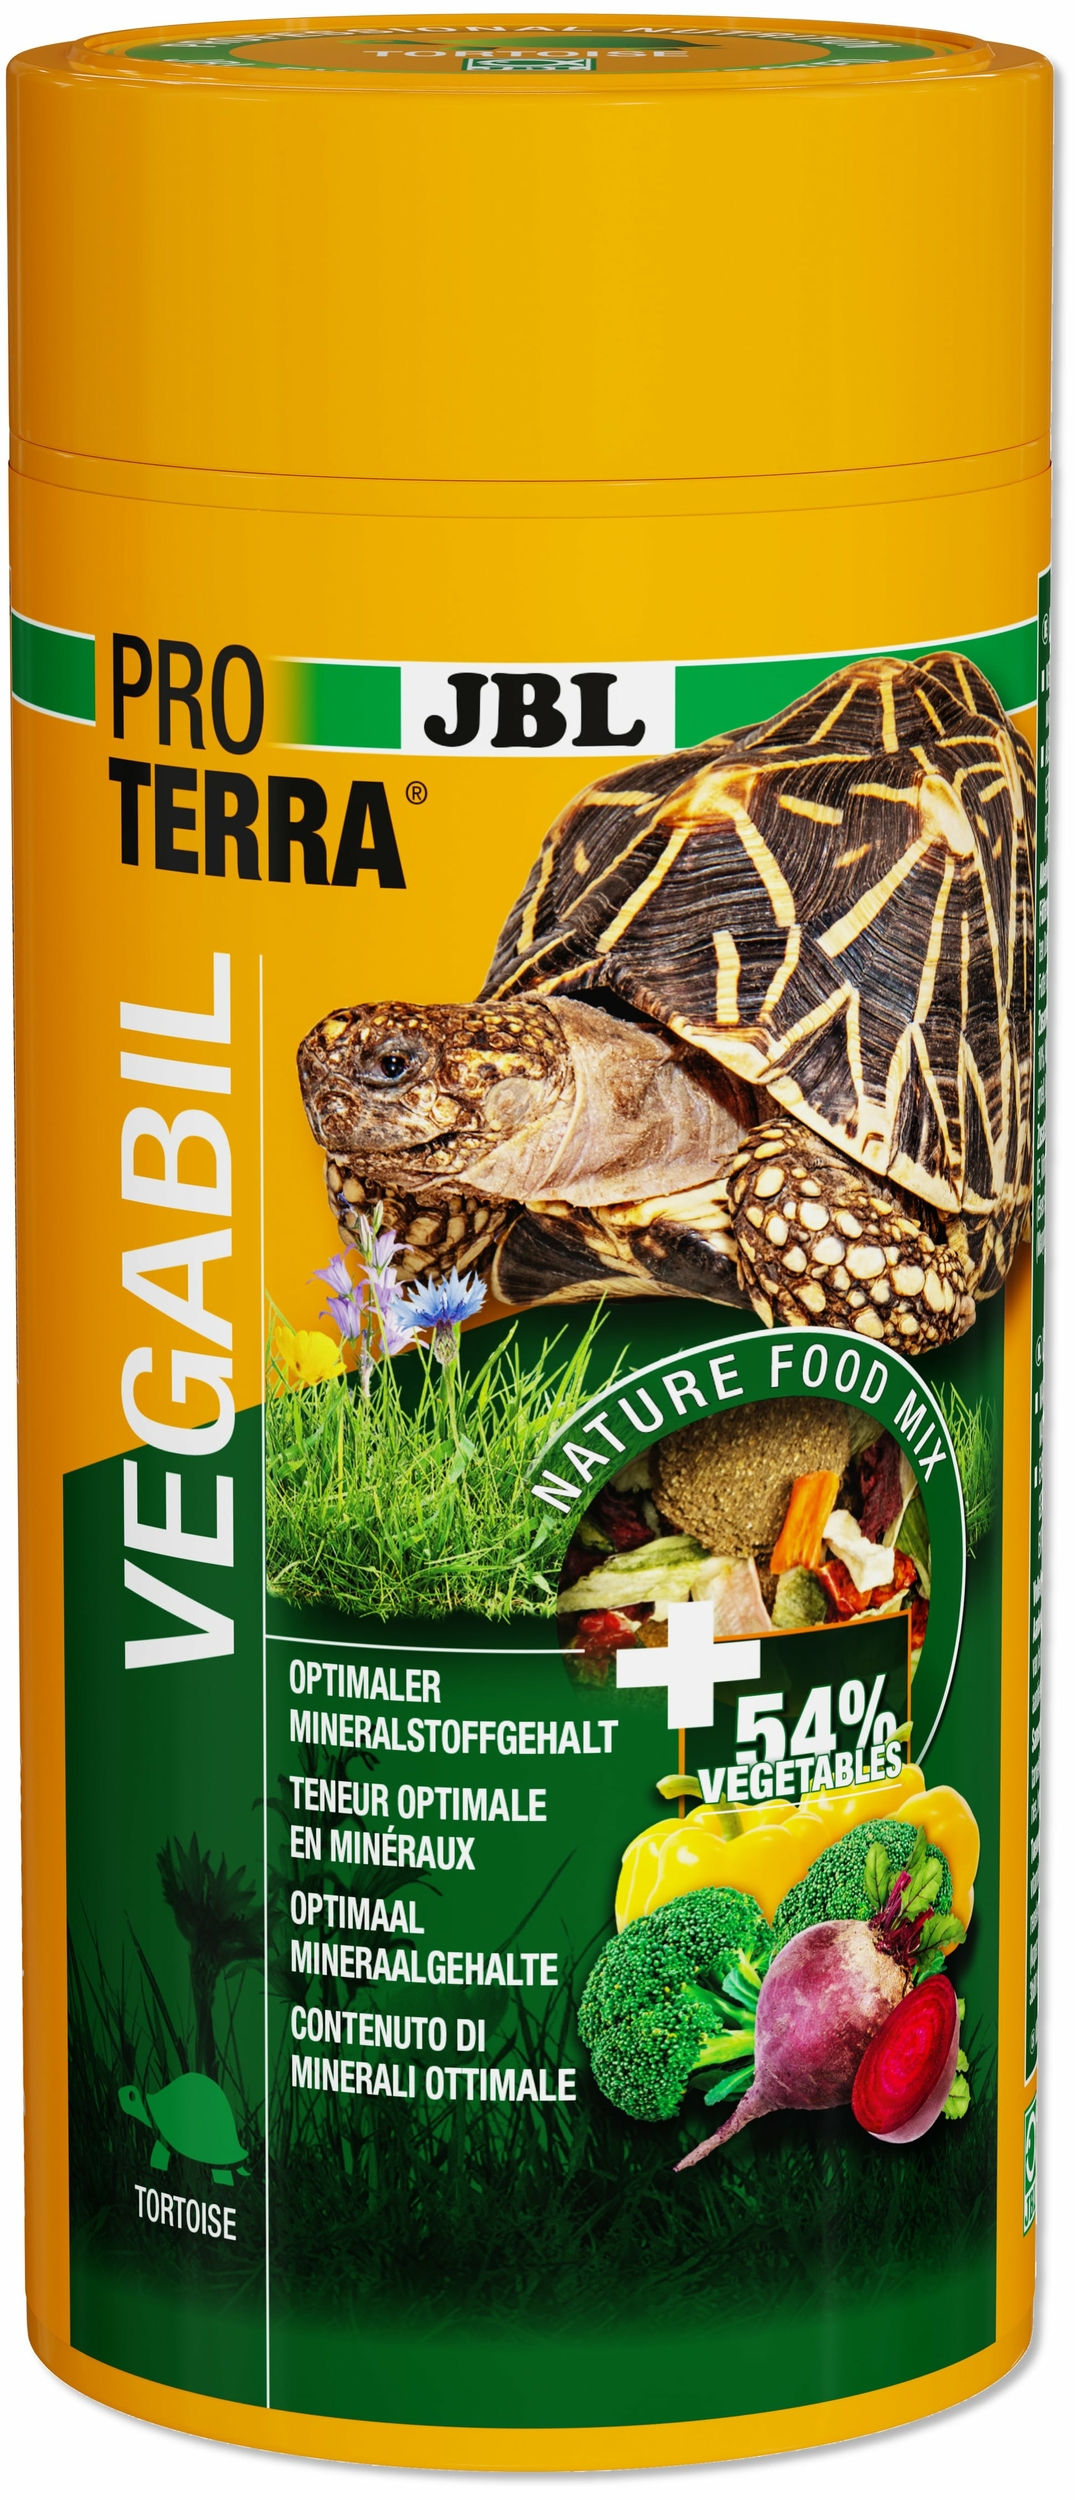 jbl-proterra-vegabil-1000-ml-nourriture-de-base-sous-forme-de-chips-au-legumes-pour-tortues-terrestres-min